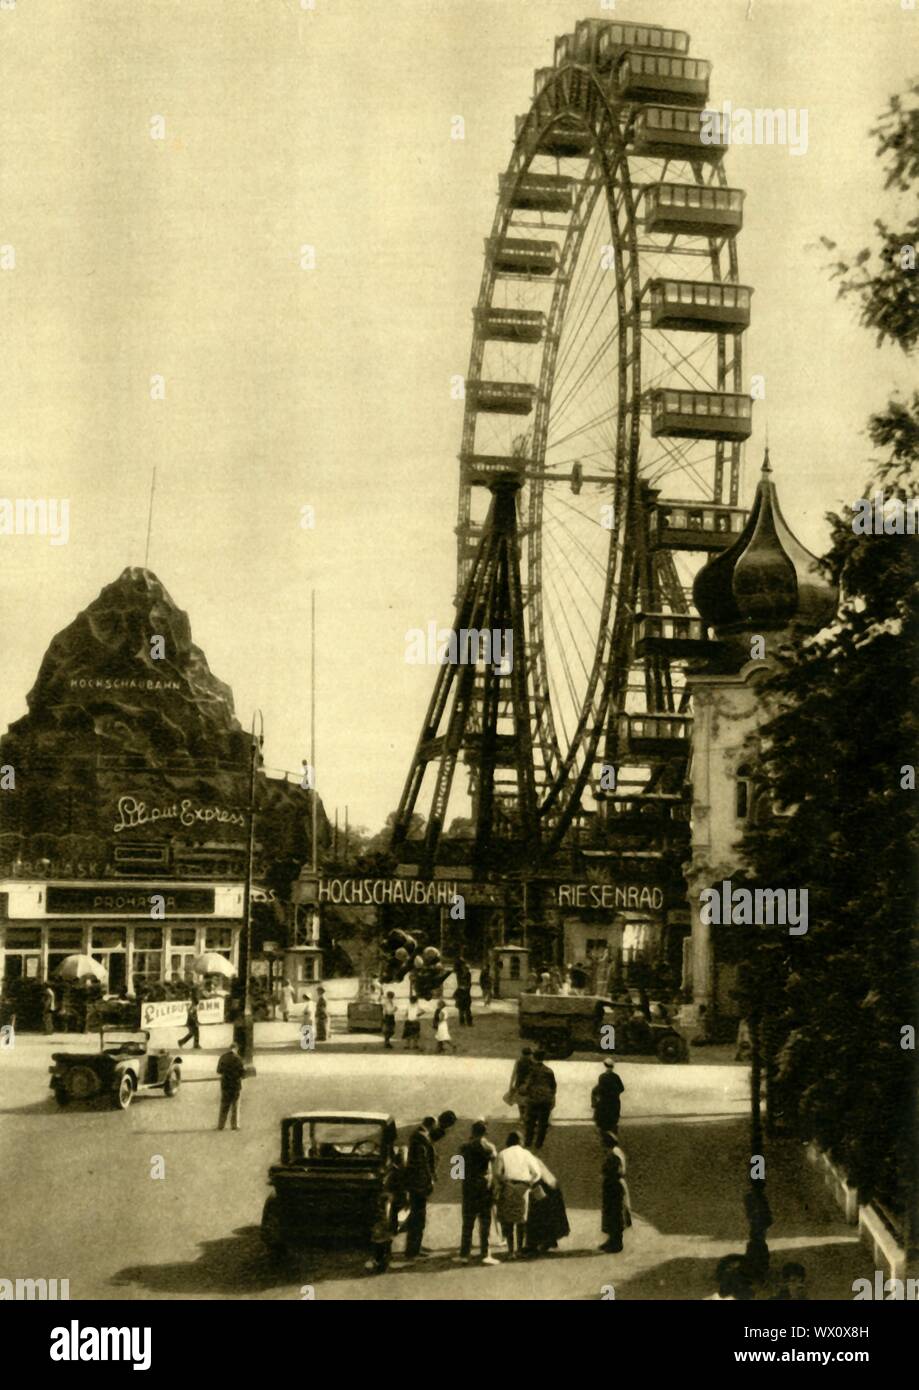 Le Wiener Riesenrad, Vienne, Autriche, c1935. La Riesenrad (grande roue) dans le parc d'attractions Prater de Vienne, Leopoldstadt, est l'une des ville les plus populaires attractions touristiques. Il a été construit en 1897, et a été le plus haut du monde grande roue existante à partir de 1920 jusqu'en 1985. La Riesenrad en vedette dans l'après Deuxième Guerre mondiale film noir "le troisième homme" (1949). Sur la gauche est le Hochschaubahn roller coaster et le chemin de fer miniature Liliput Express. À partir de "&# ts6;Österreich - Land und Volk", (l'Autriche, terre et peuple). [R. Lechner (Wilhelm M&# xfc;ller), Vienne, c1935] Banque D'Images